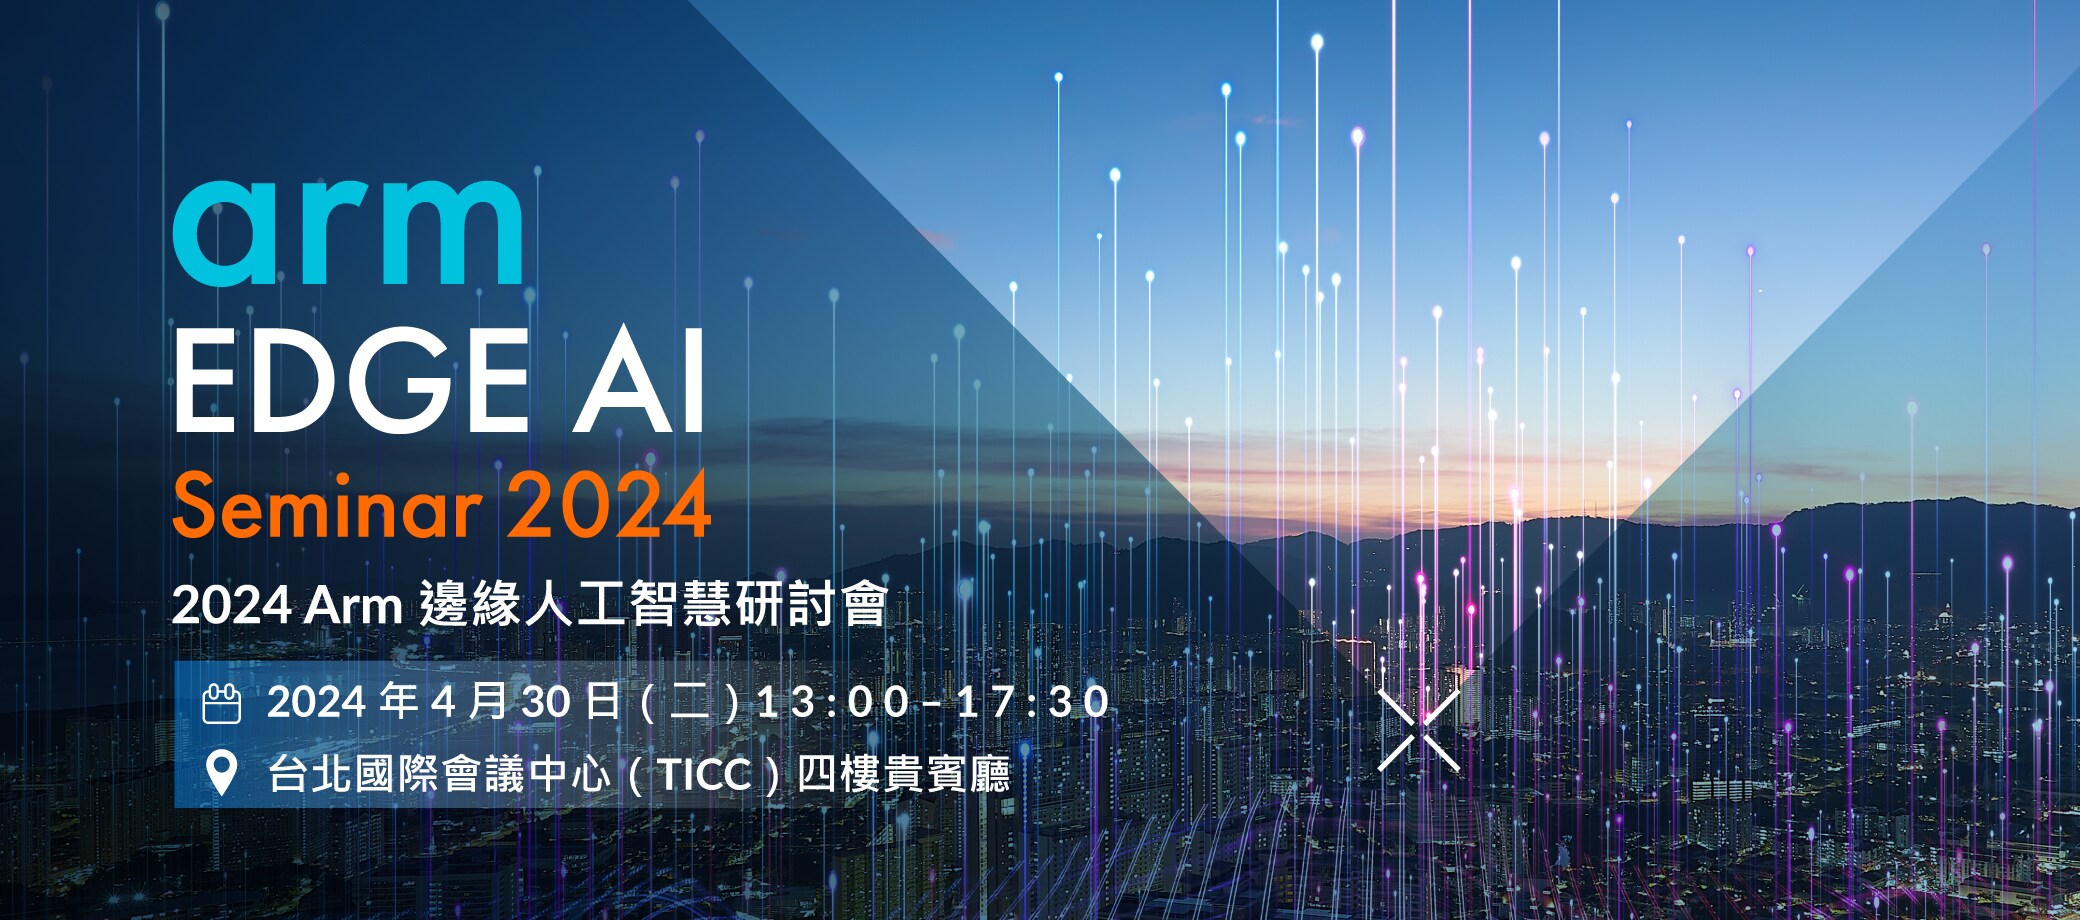 2024 Edge AI 研討會